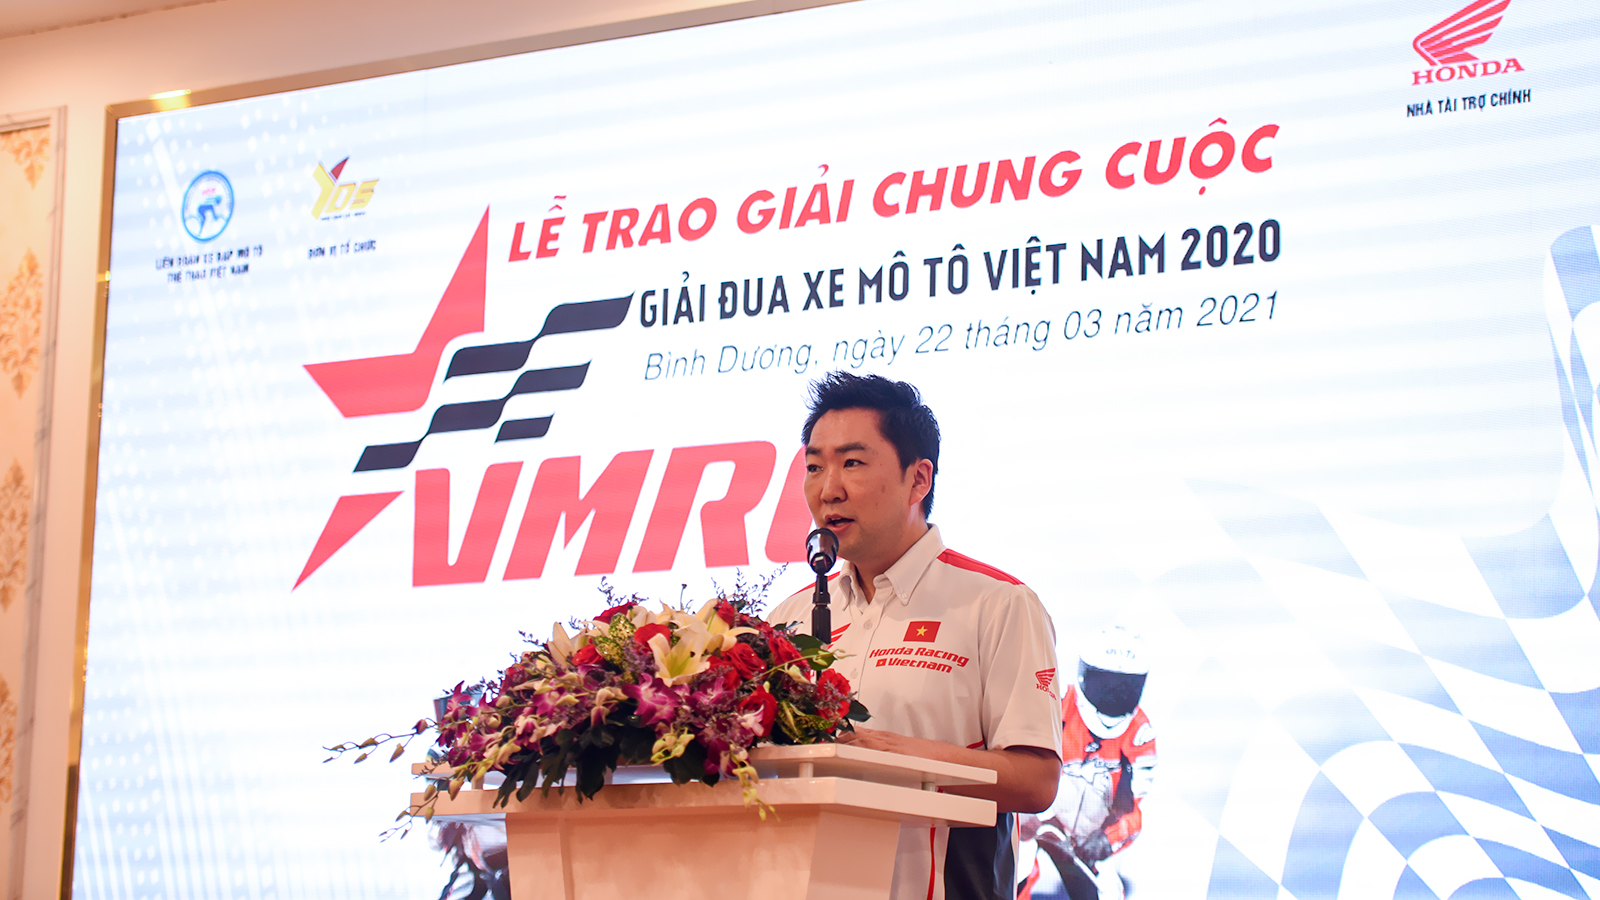 Tổng kết Giải đua xe Mô tô Việt Nam 2020: Vượt khó thành công dsc-2479-copy.jpg